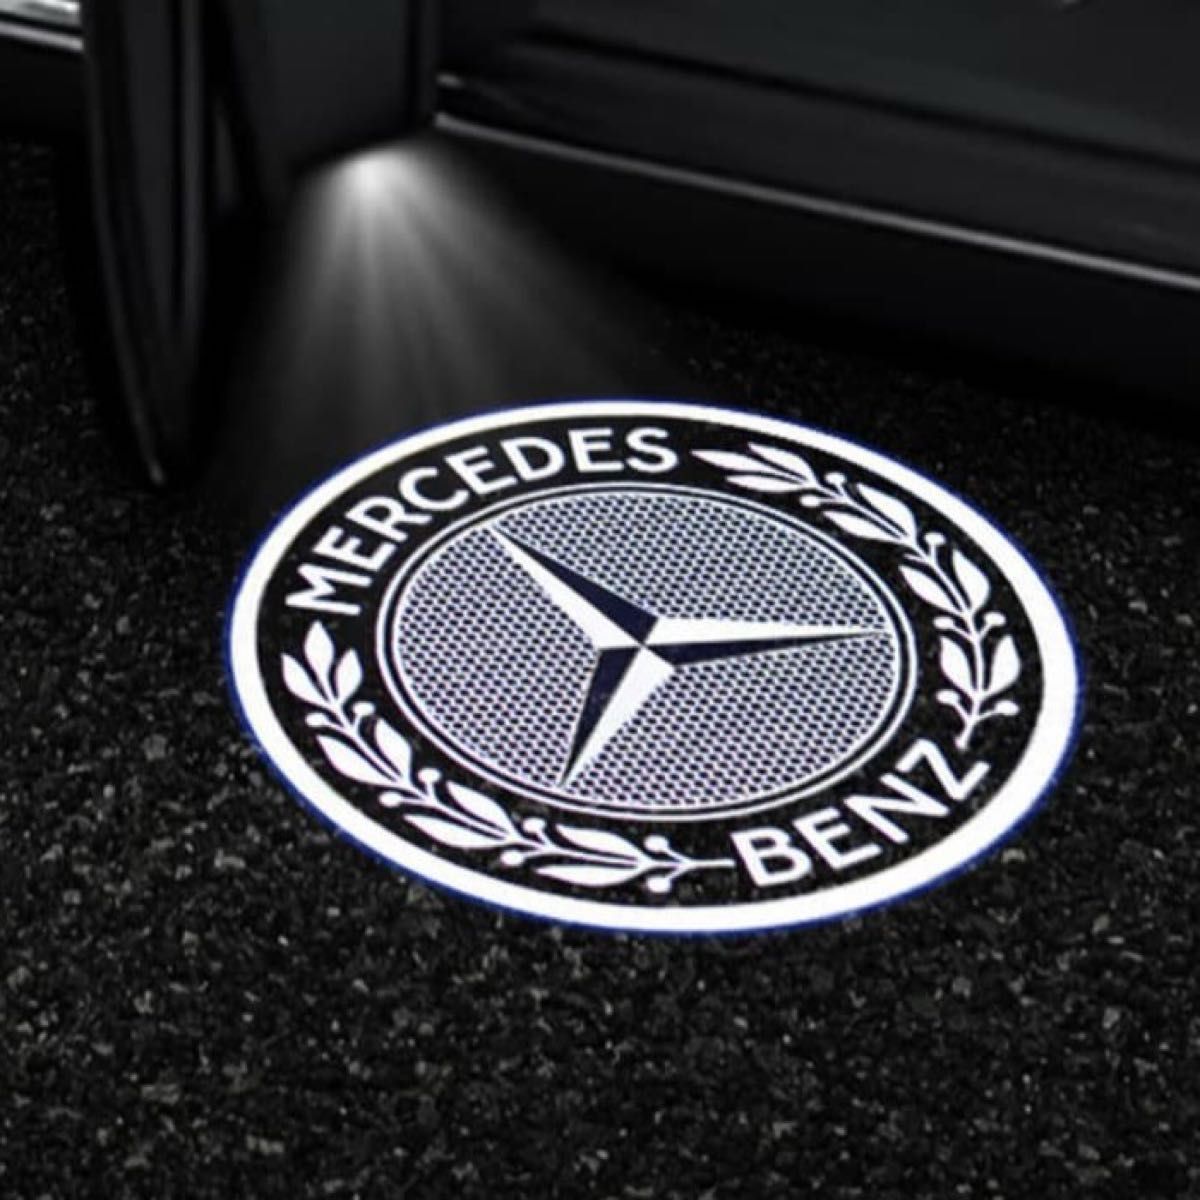 Mercedes Benzメルセデスベンツ Wheat Ears LED カーテシランプ カーテシライト ドア ウェルカムライトr